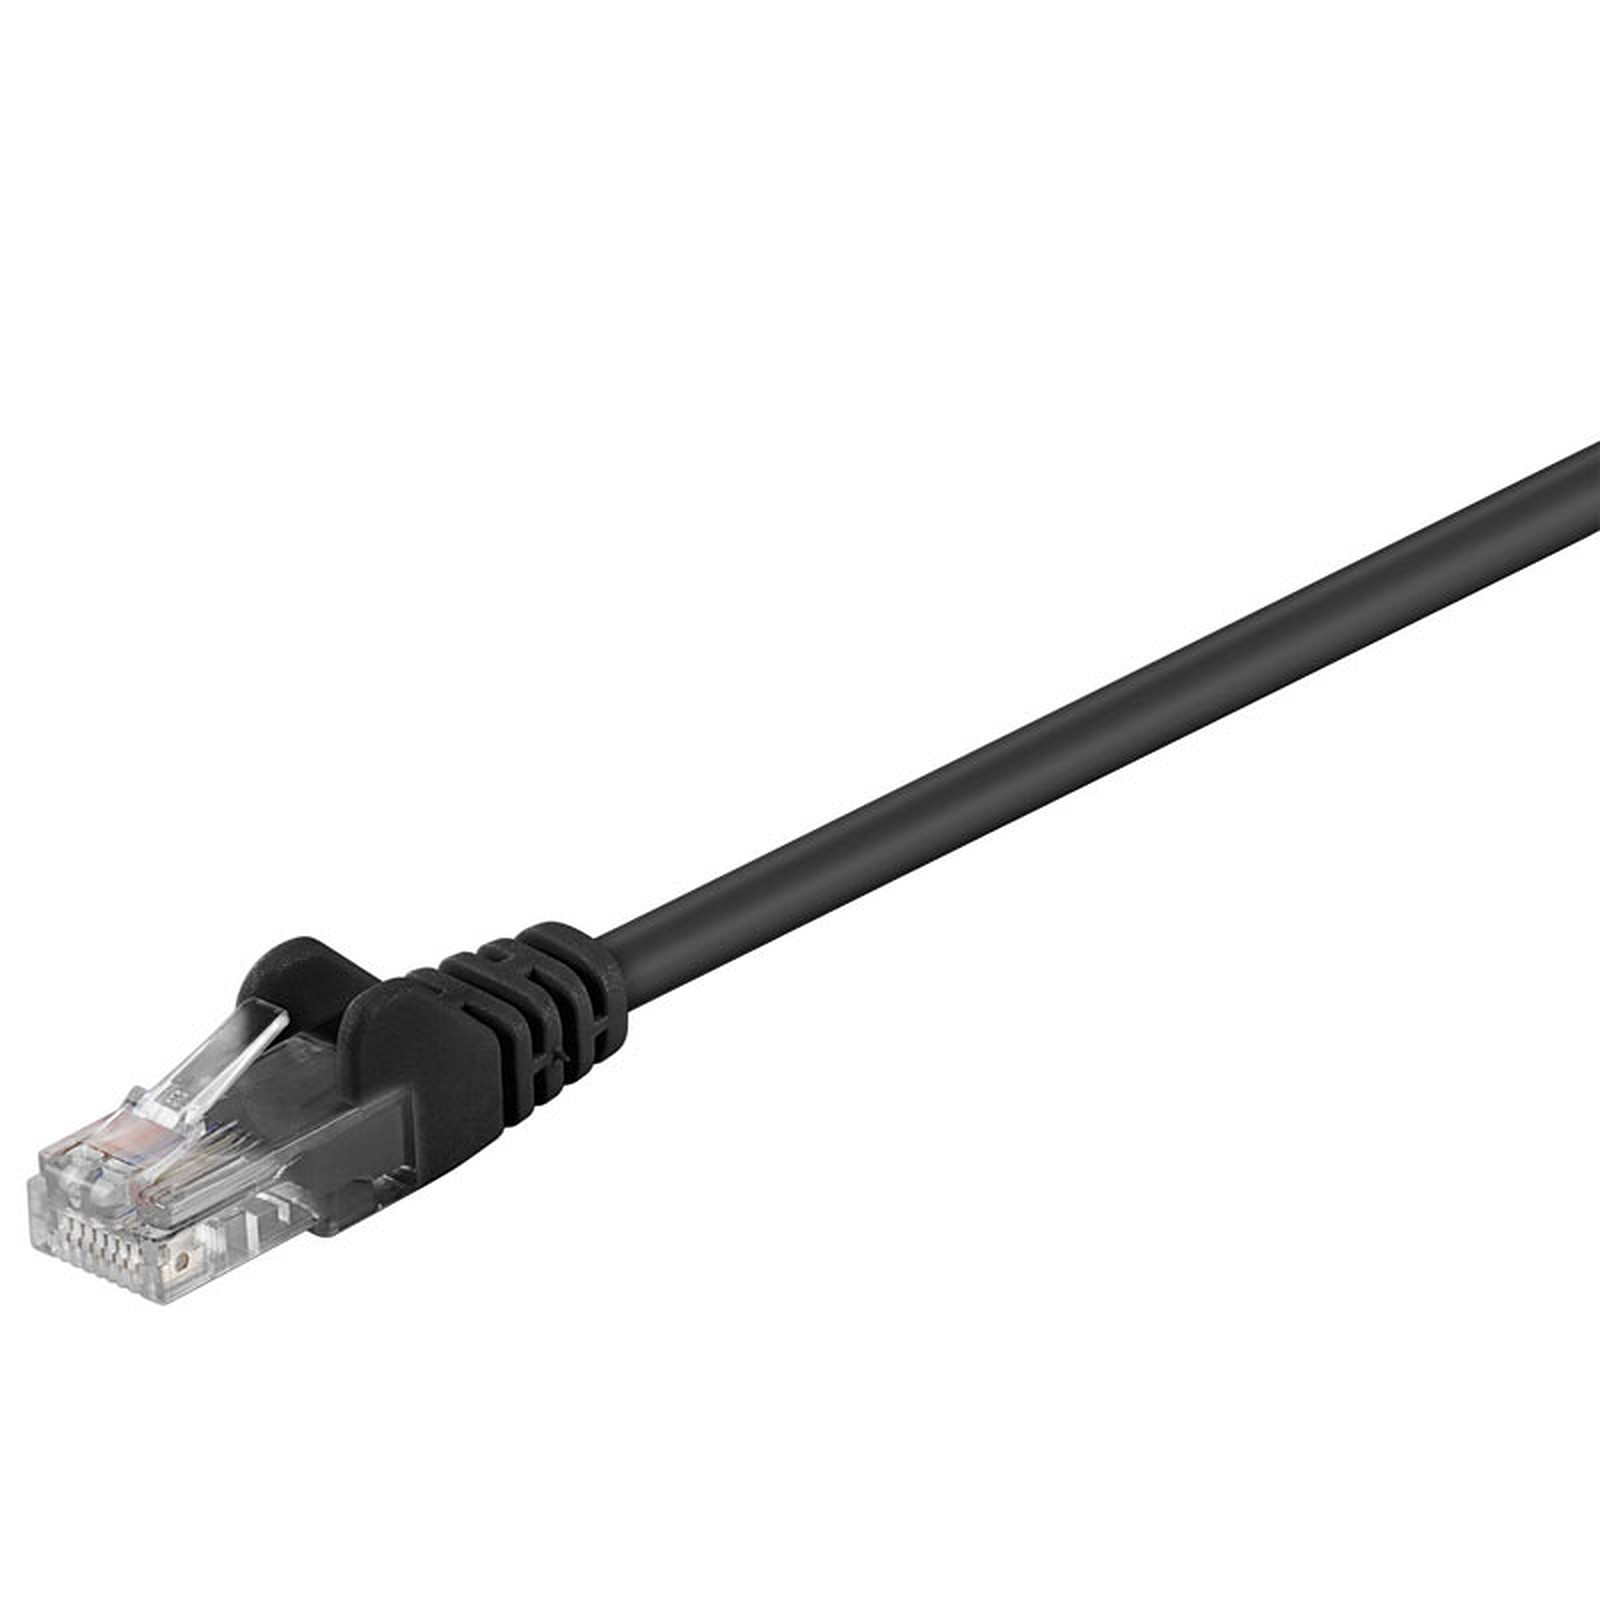 Cable RJ45 categorie 5e U/UTP 0.5 m (Noir) - Cable RJ45 Generique